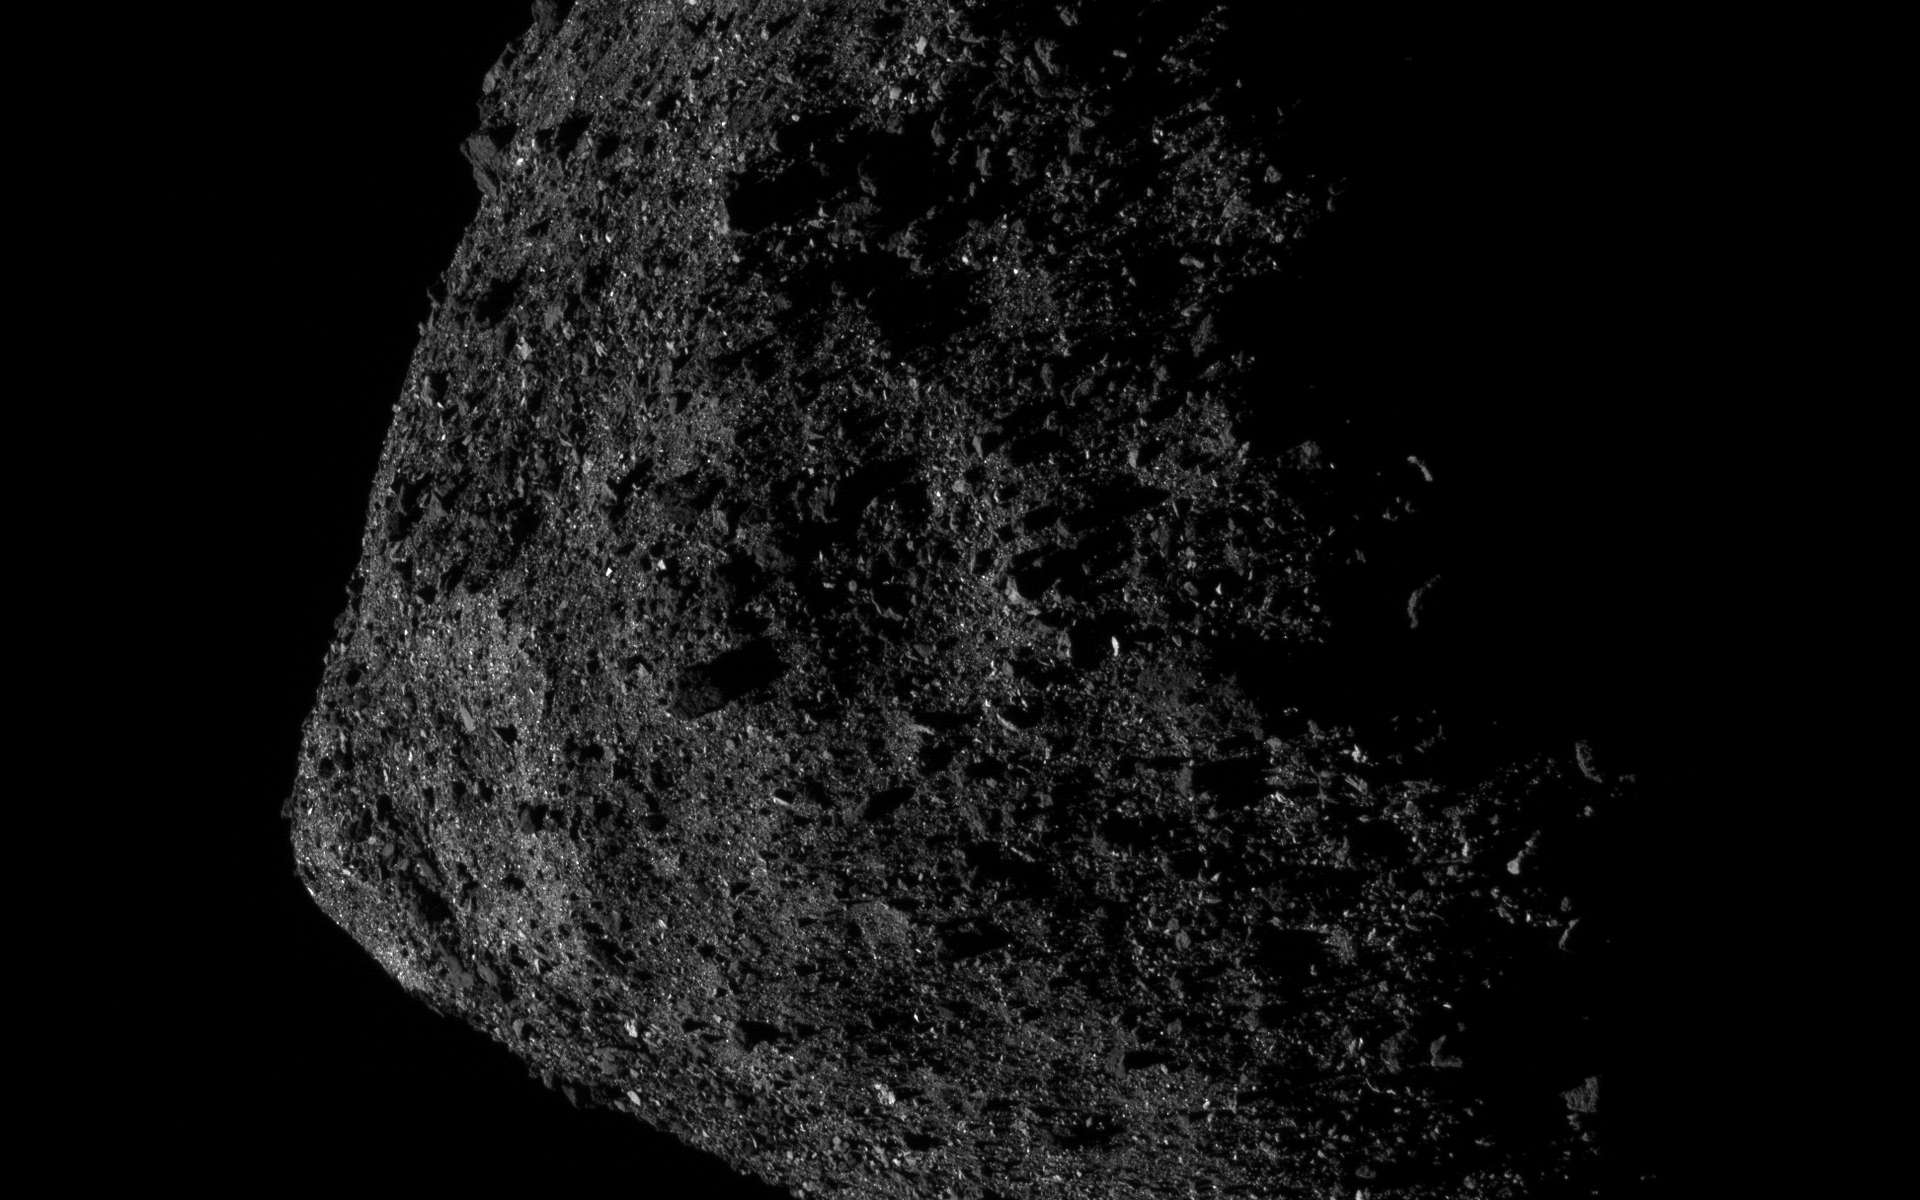 Des images détaillées à couper le souffle de l'astéroïde Bennu !